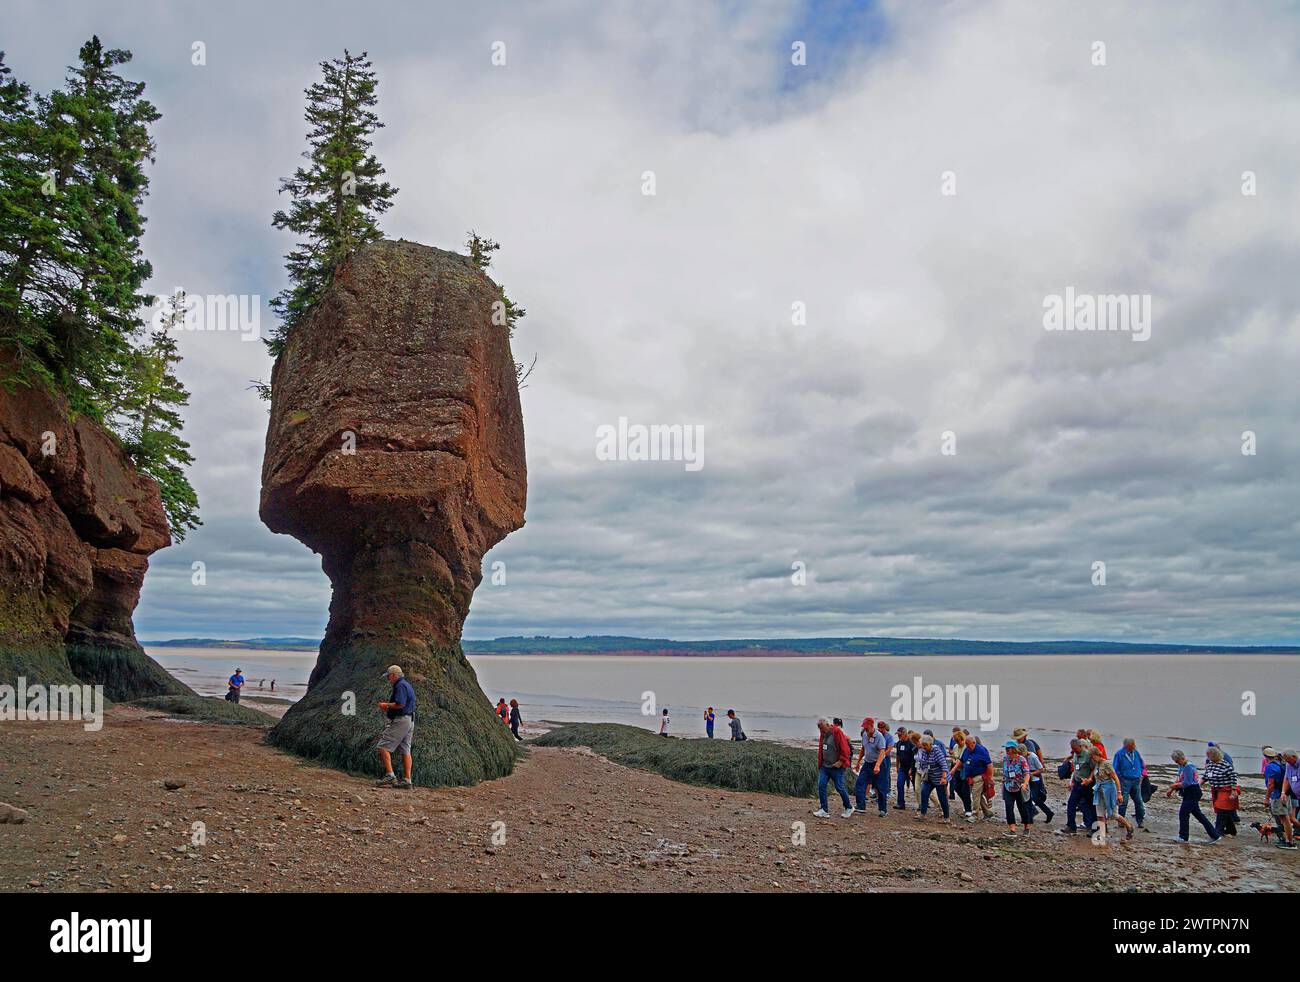 Gruppo turistico, paesaggio costiero con bassa marea, albero su masso di arenaria rossa, Flower Pot, Hopewell Rocks Provincial Park, Fundy Bay, New Brunswick, CAN Foto Stock